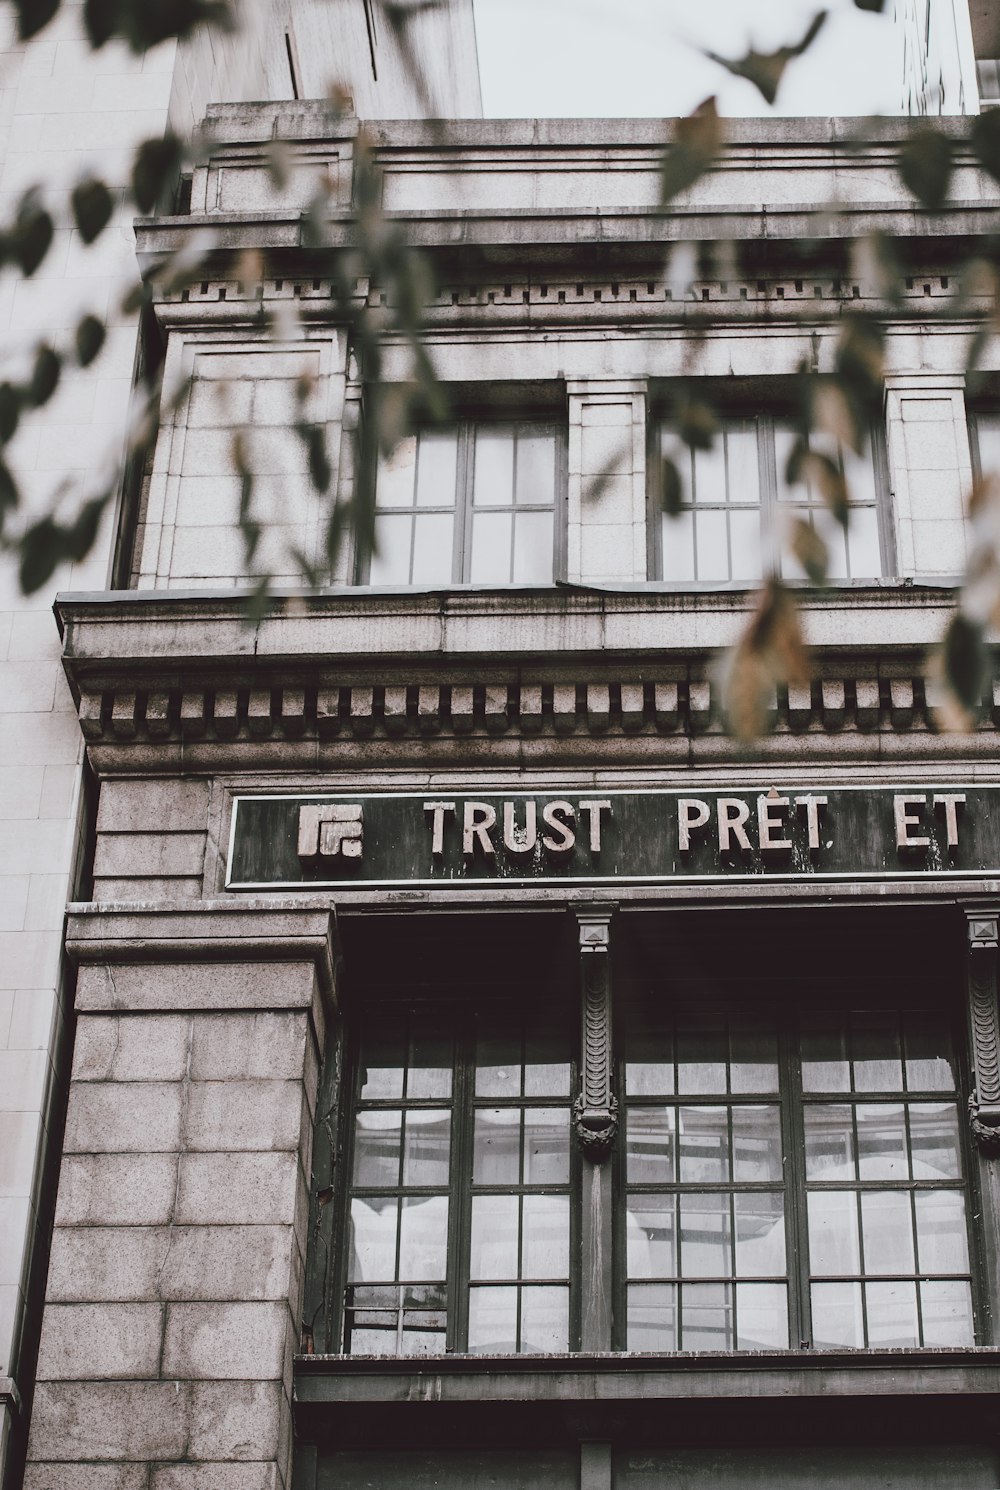 Trust Pret Et building